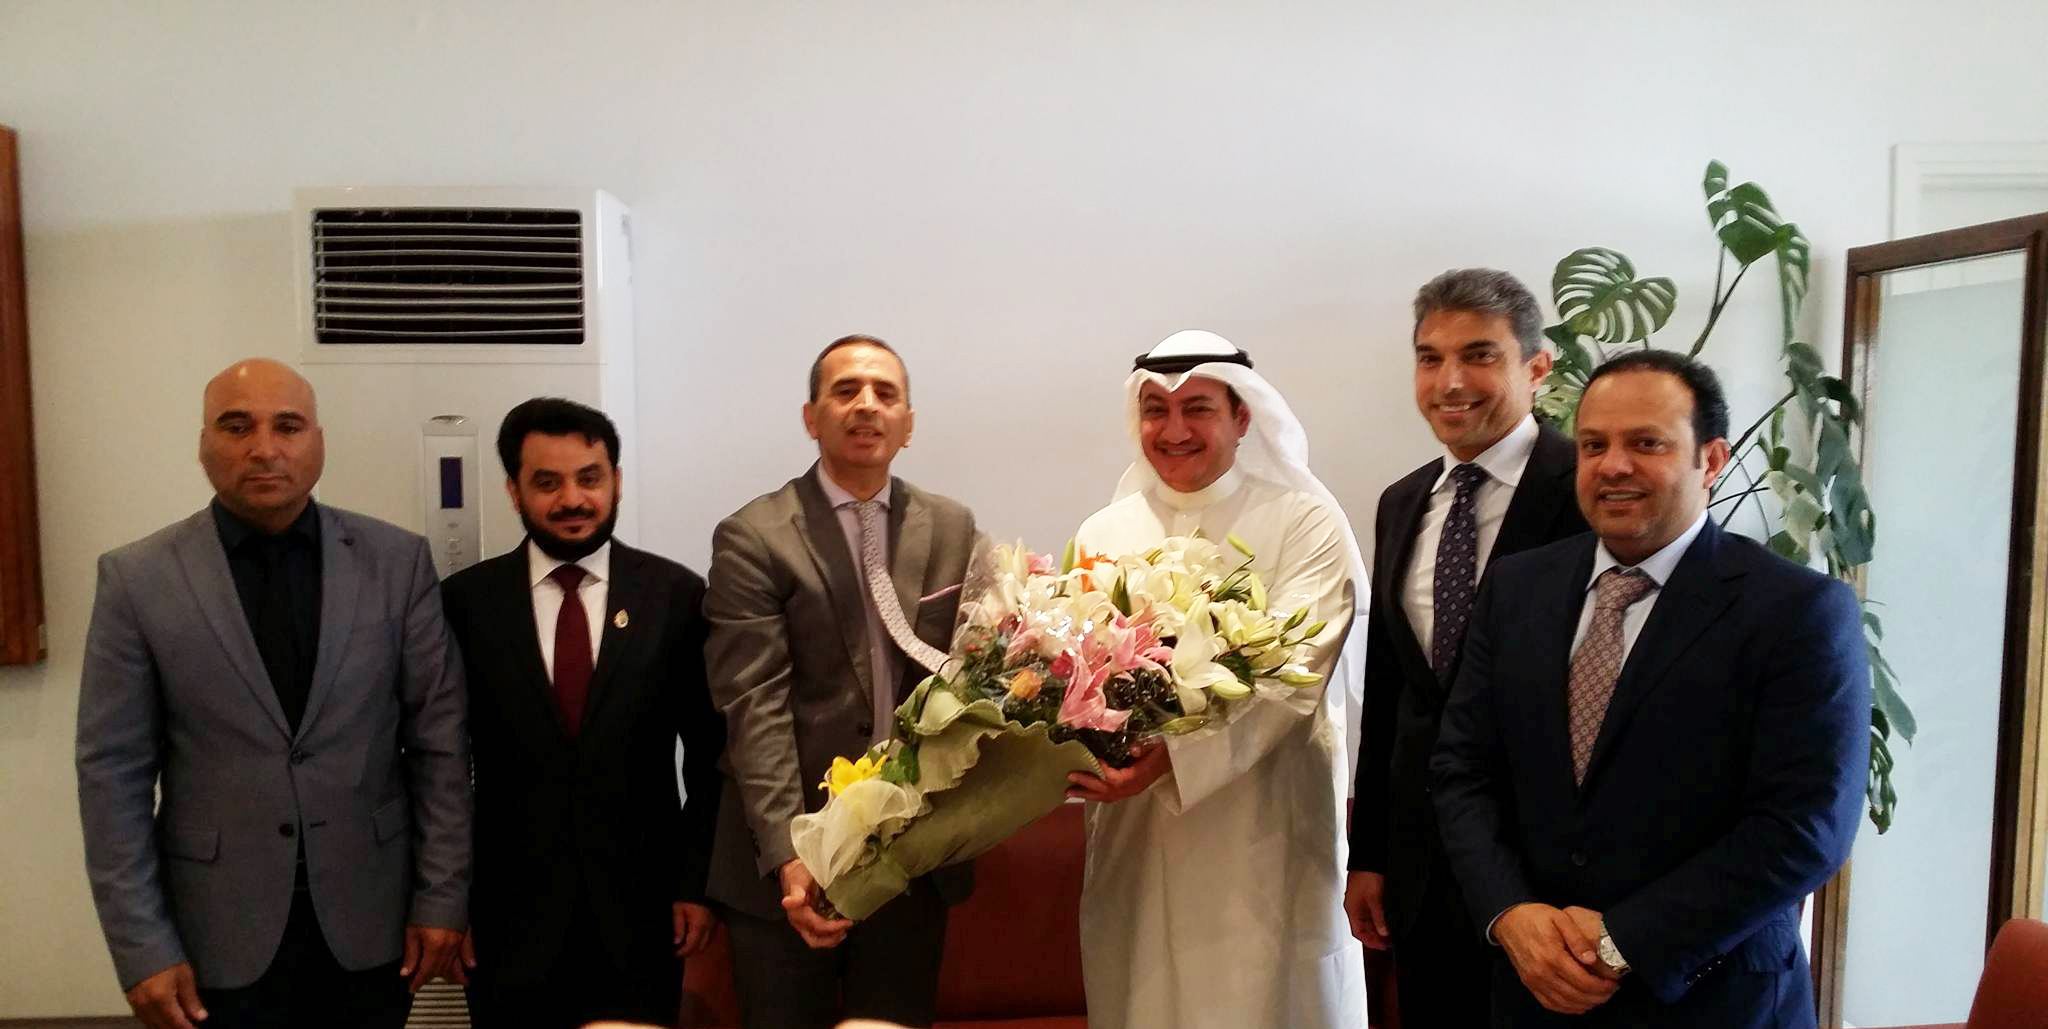 عضو مجلس الأمة الكويتي عسكر العنزي عقب وصوله ووفد مجموعة الصداقة البرلمانية السادسة في مجلس الامة الكويتي إلى تونس